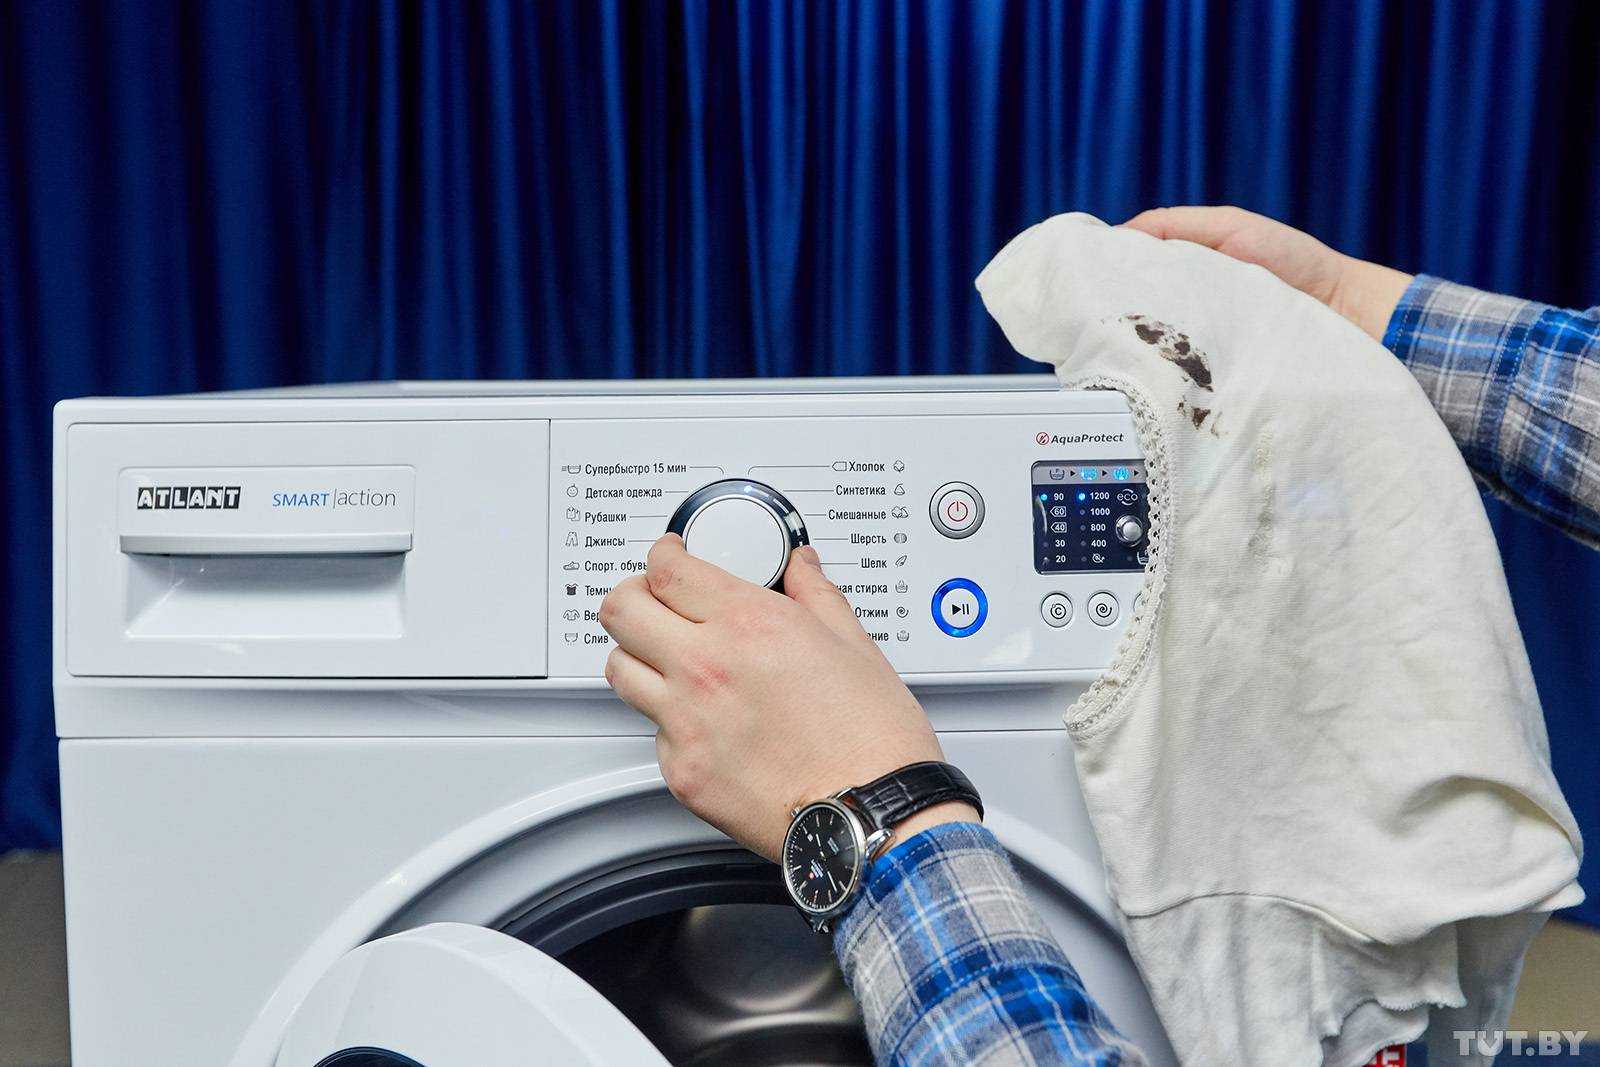 Как стирать в стиральной машине правильно